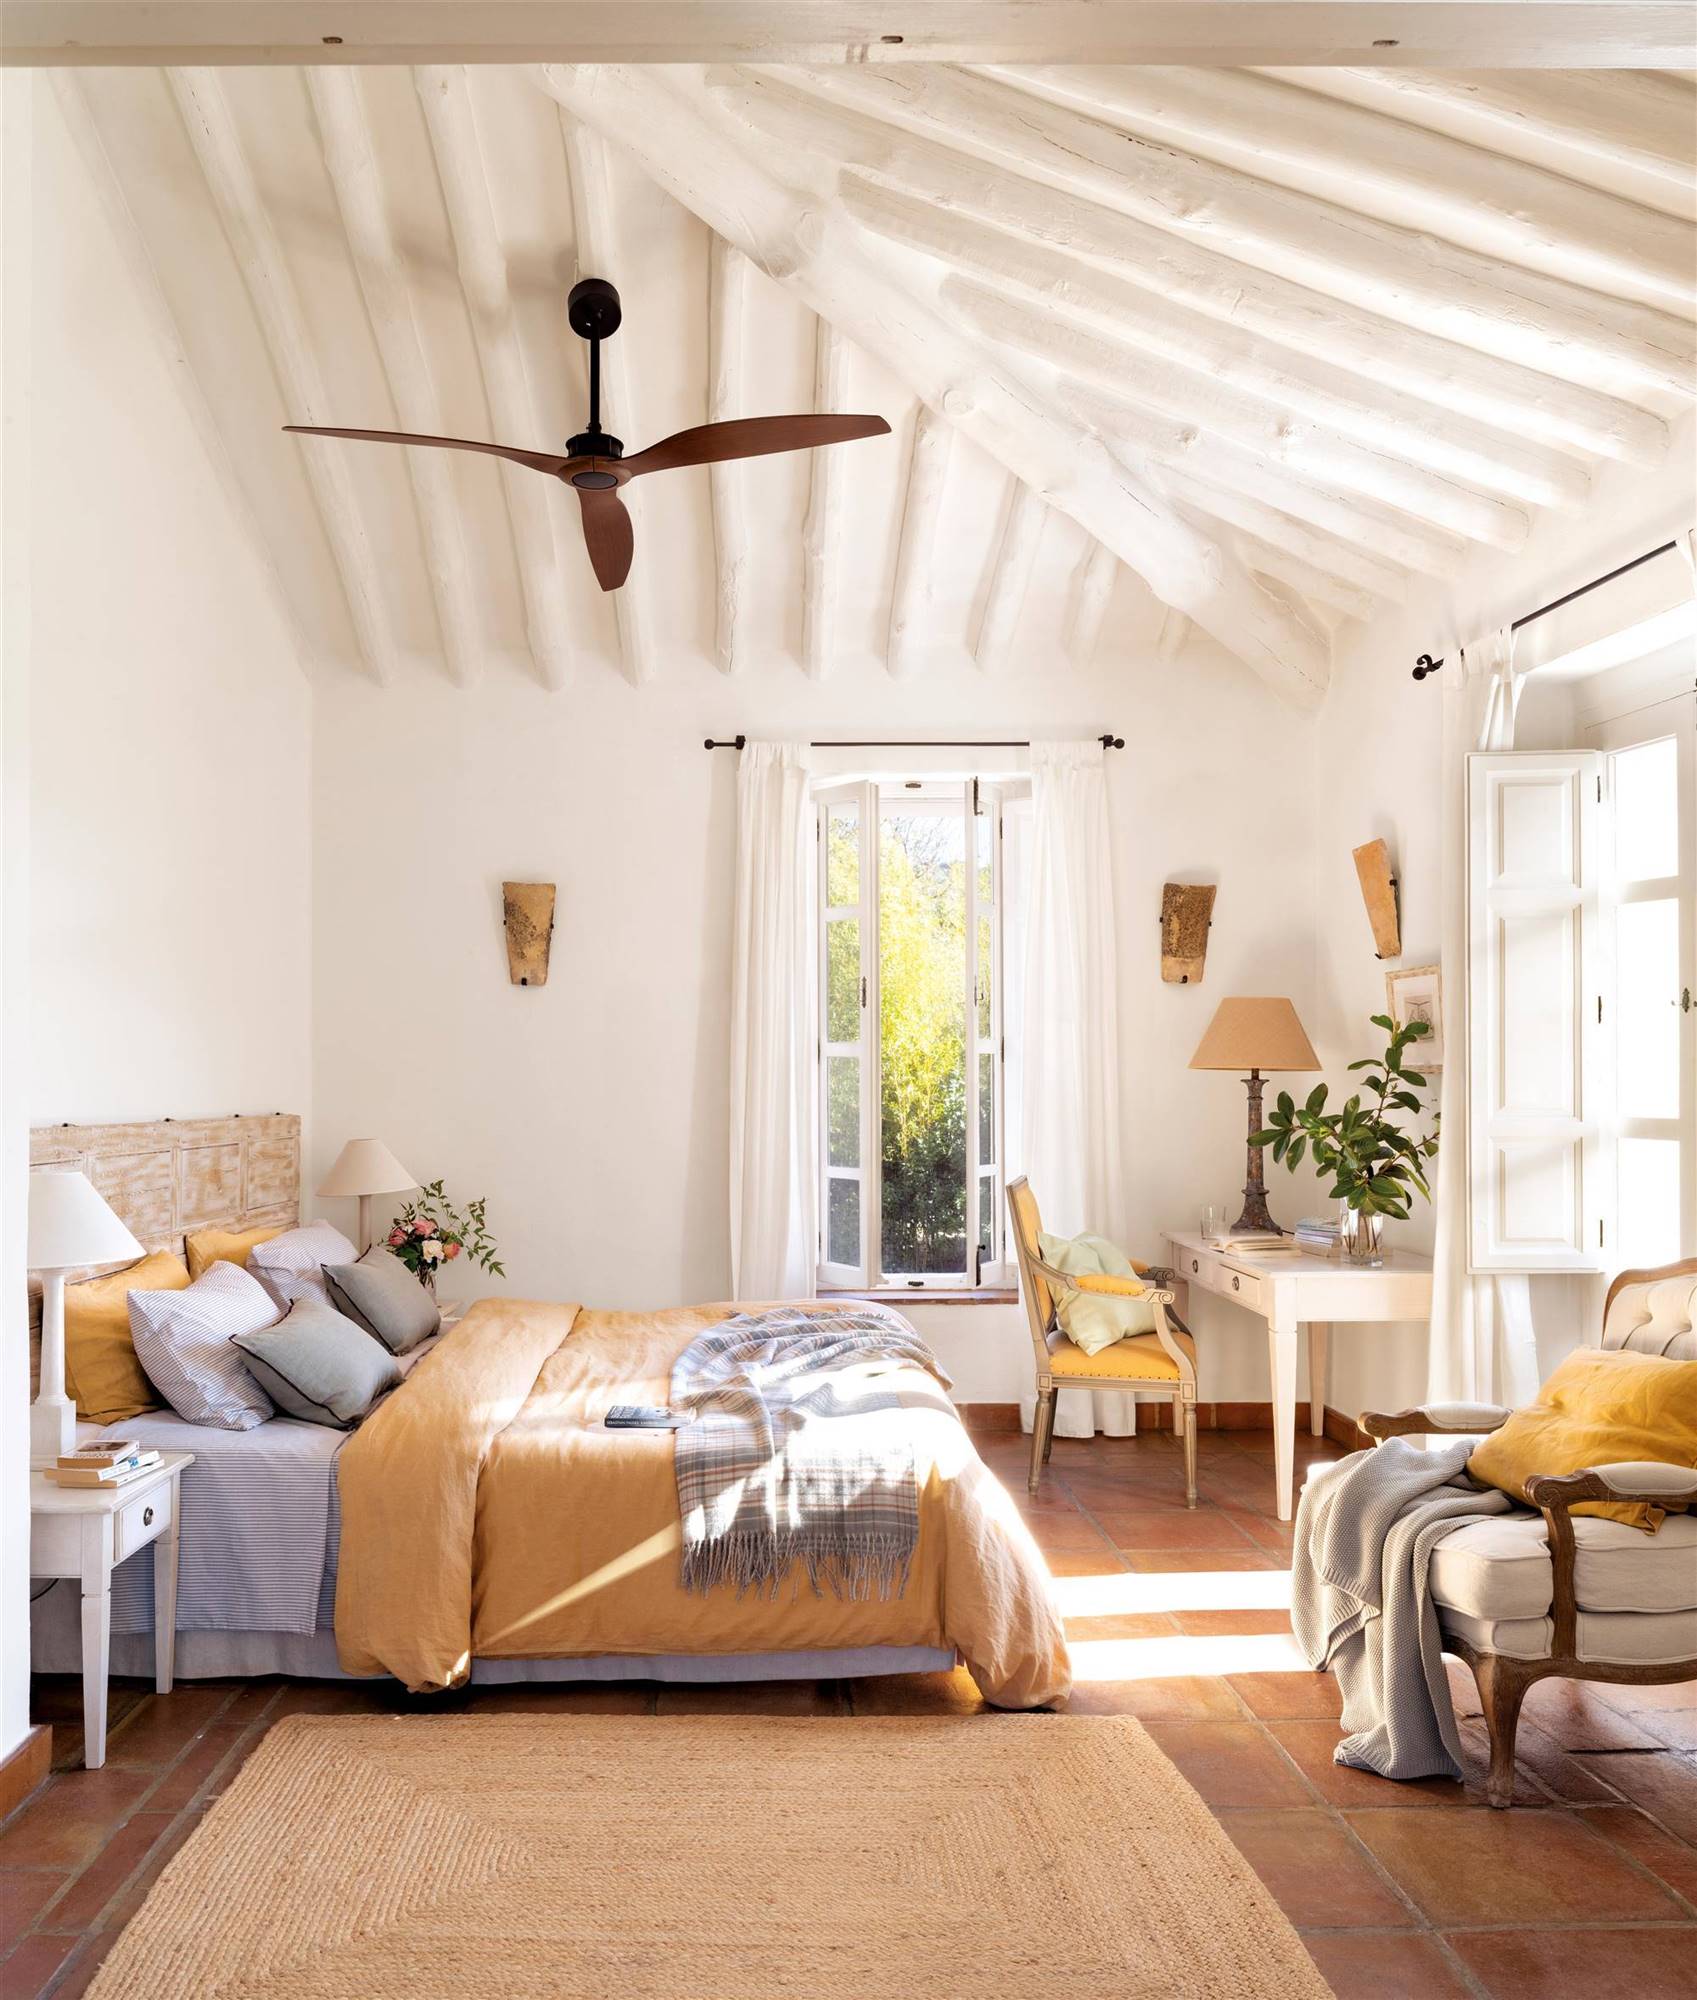 Dormitorio de verano con techos abuhardillados blancos, ventilador de techo y textiles en color mostaza. 